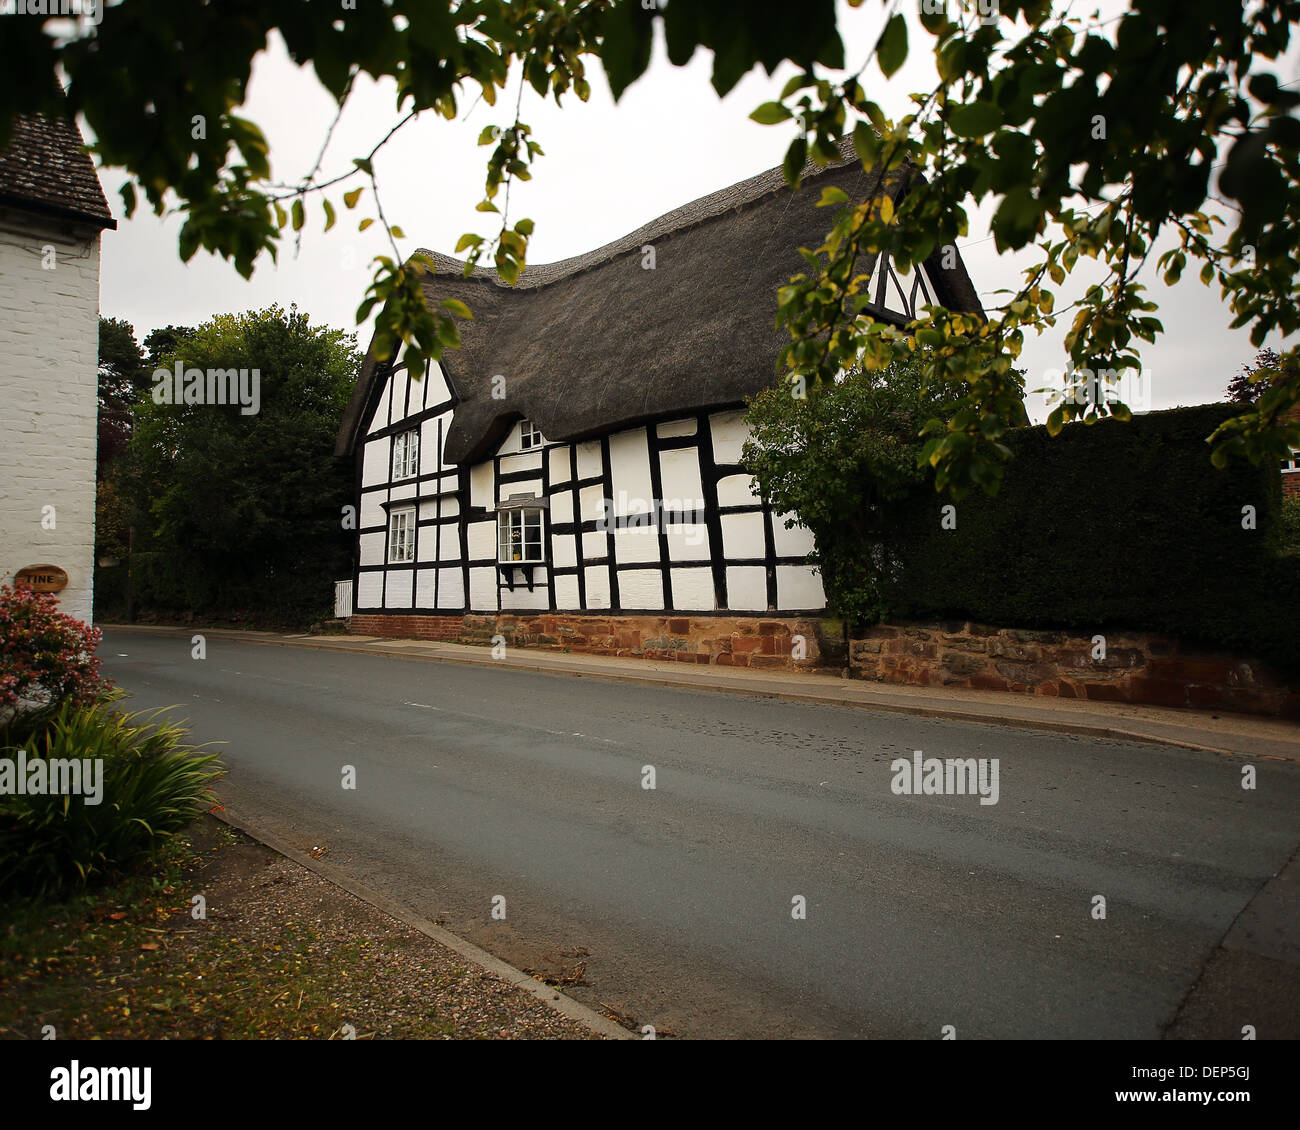 Chalets en noir et blanc et des pubs prises dans le village d'Ombersley situé dans la campagne du Worcestershire. Banque D'Images